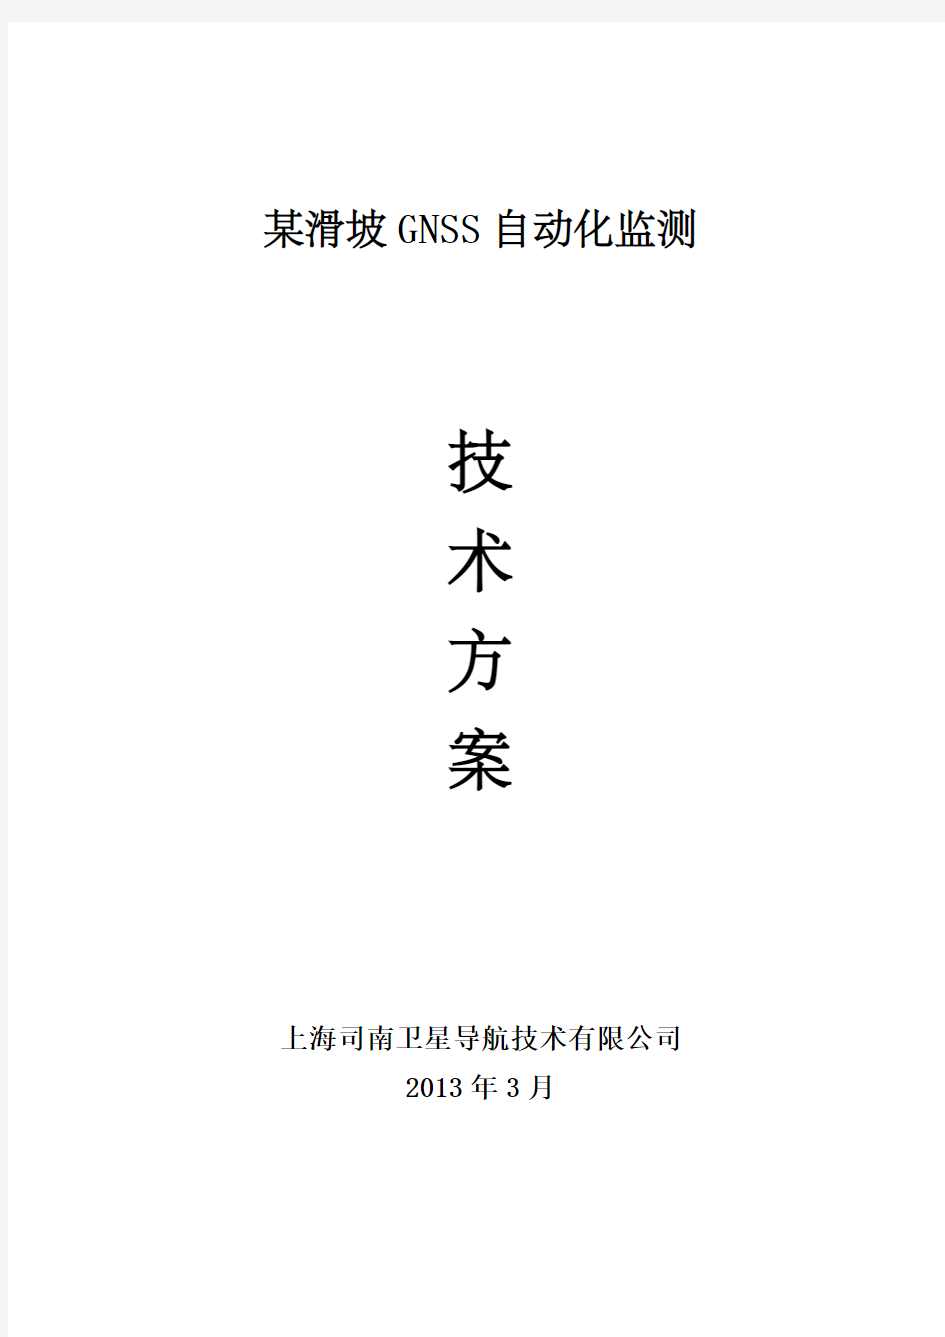 上海司南GNSS自动化边坡在线监测方案